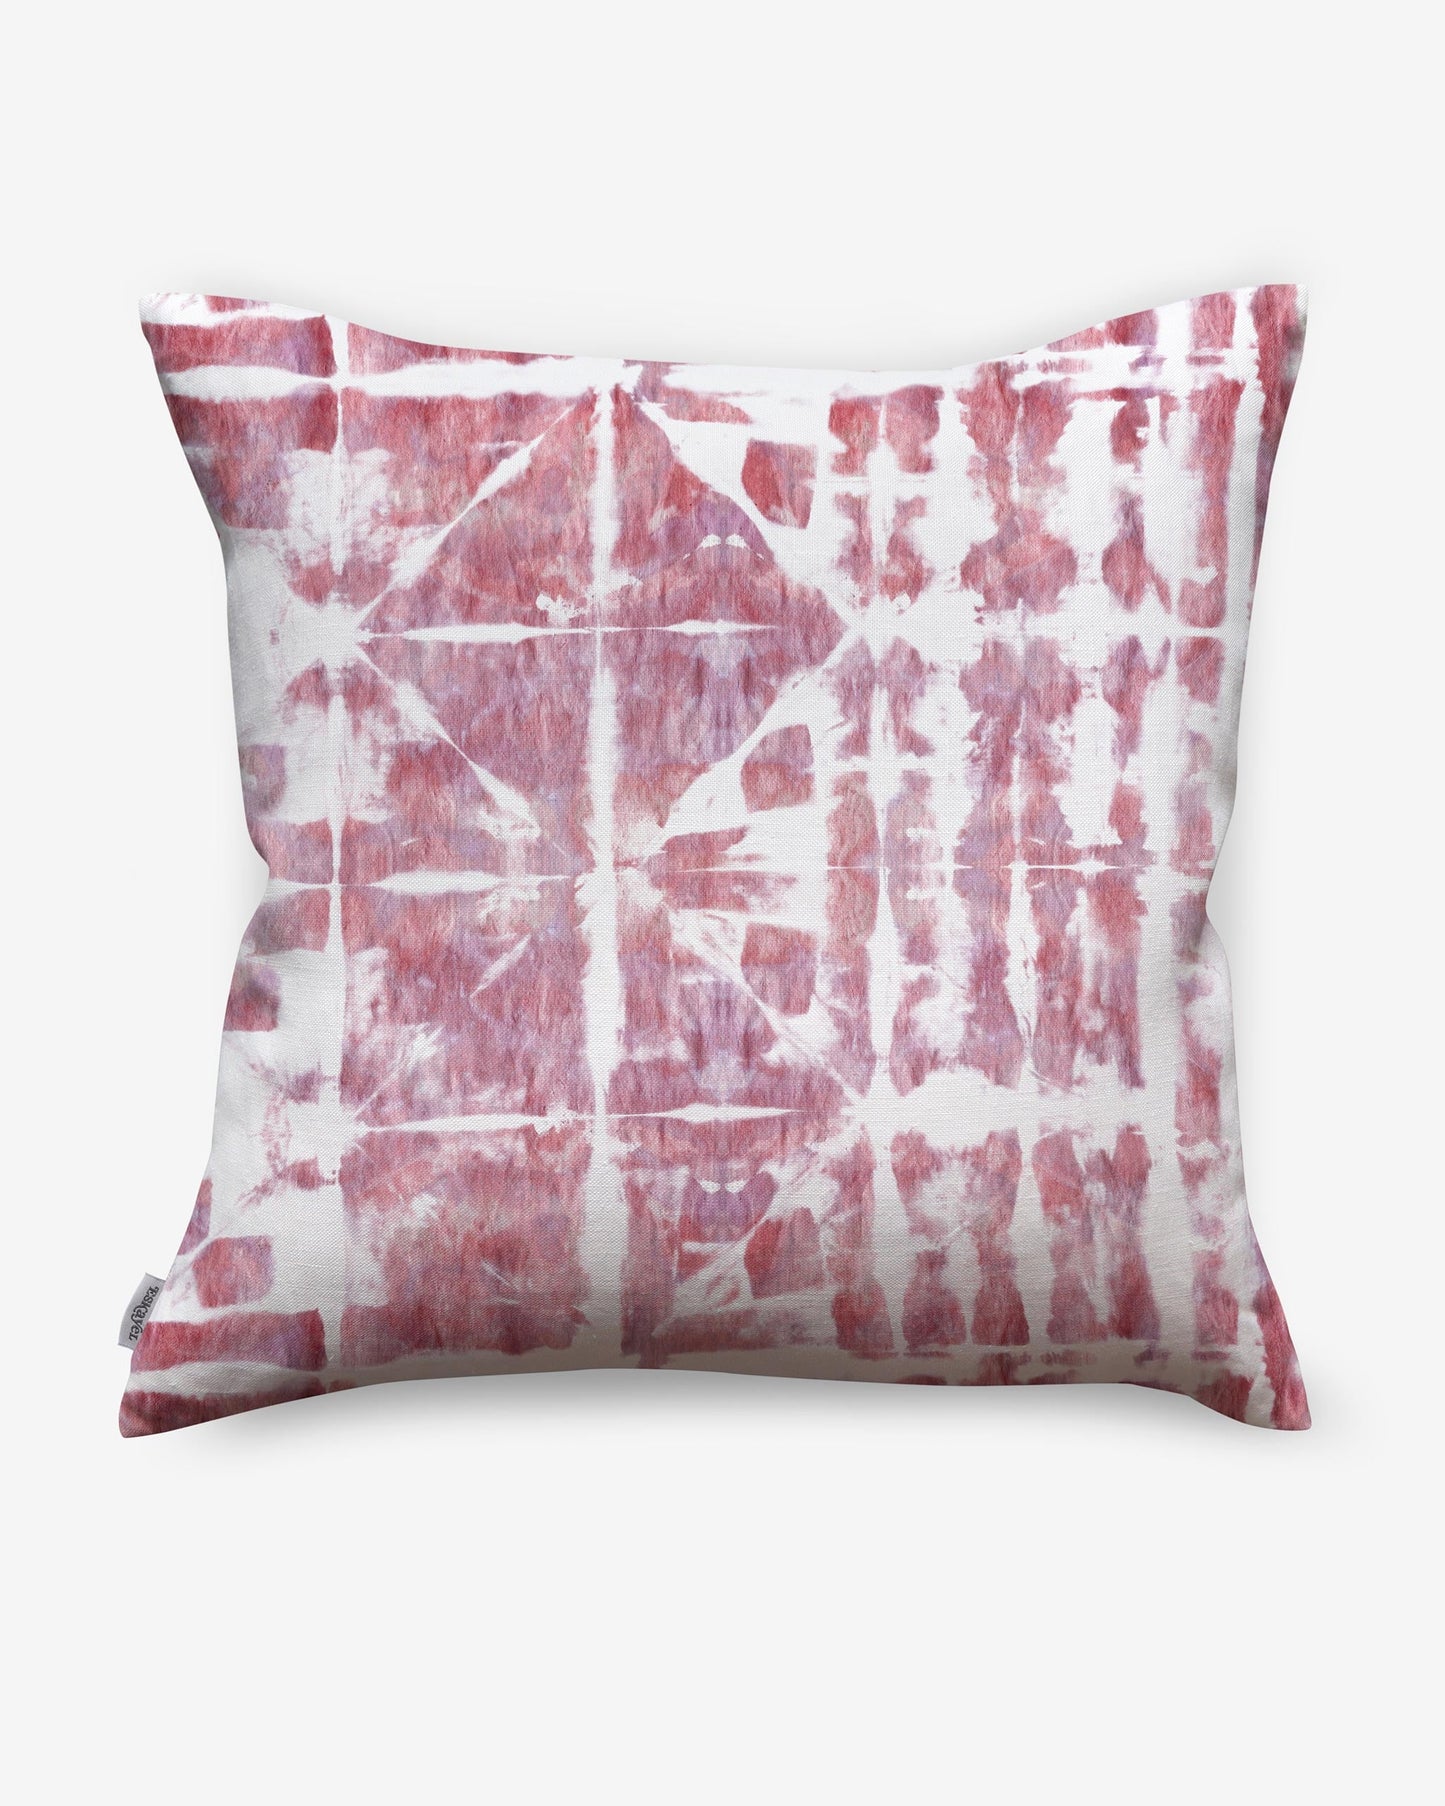 A pink and white Banda pillow with a tie dye pattern utilizing shibori tie-dye techniques